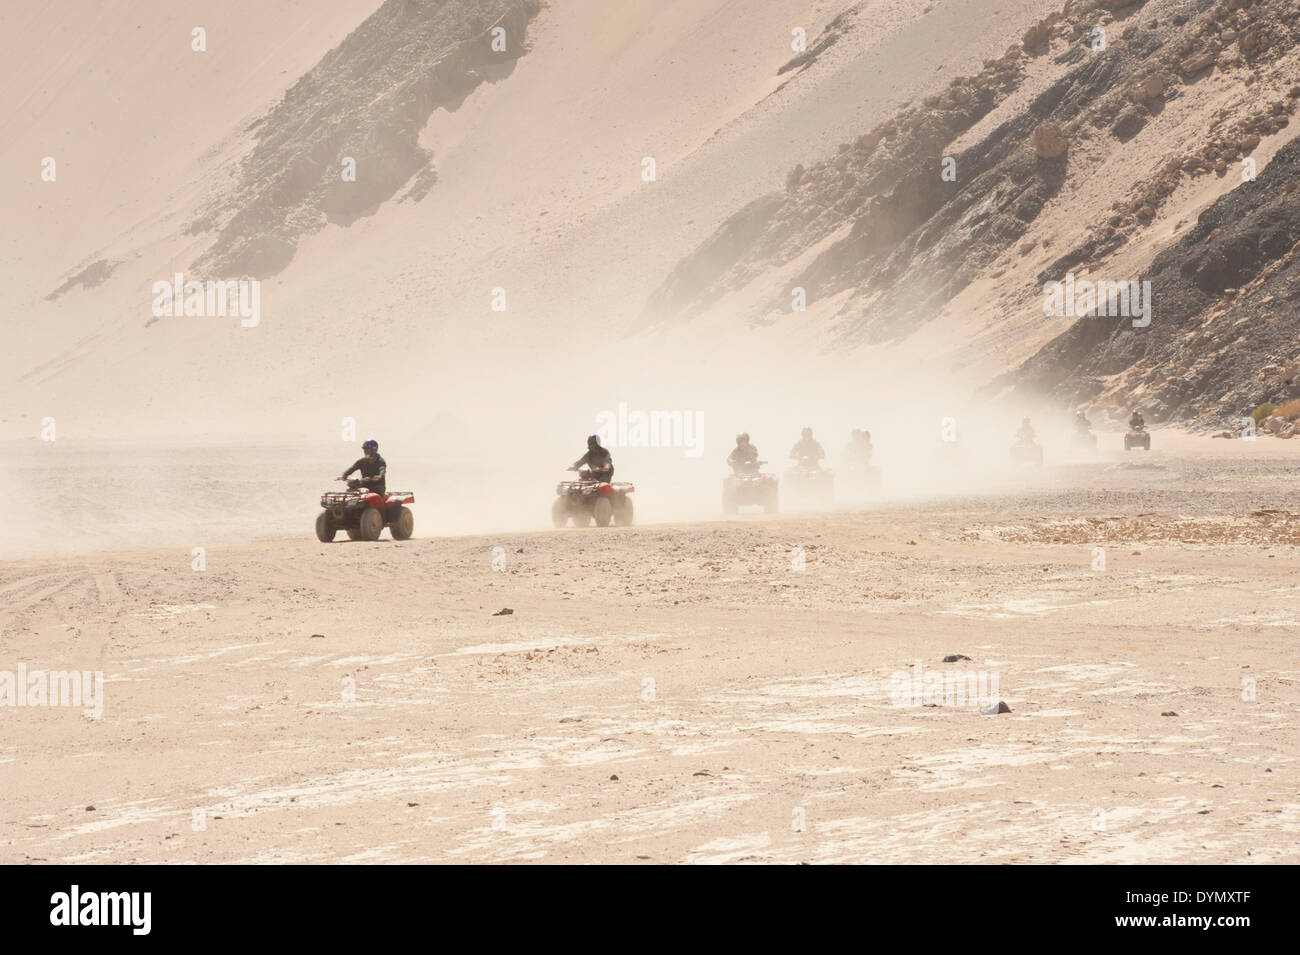 Gruppo di quad bikes facendo safari nel deserto attraverso un arido paesaggio arido con una nube di polvere Foto Stock